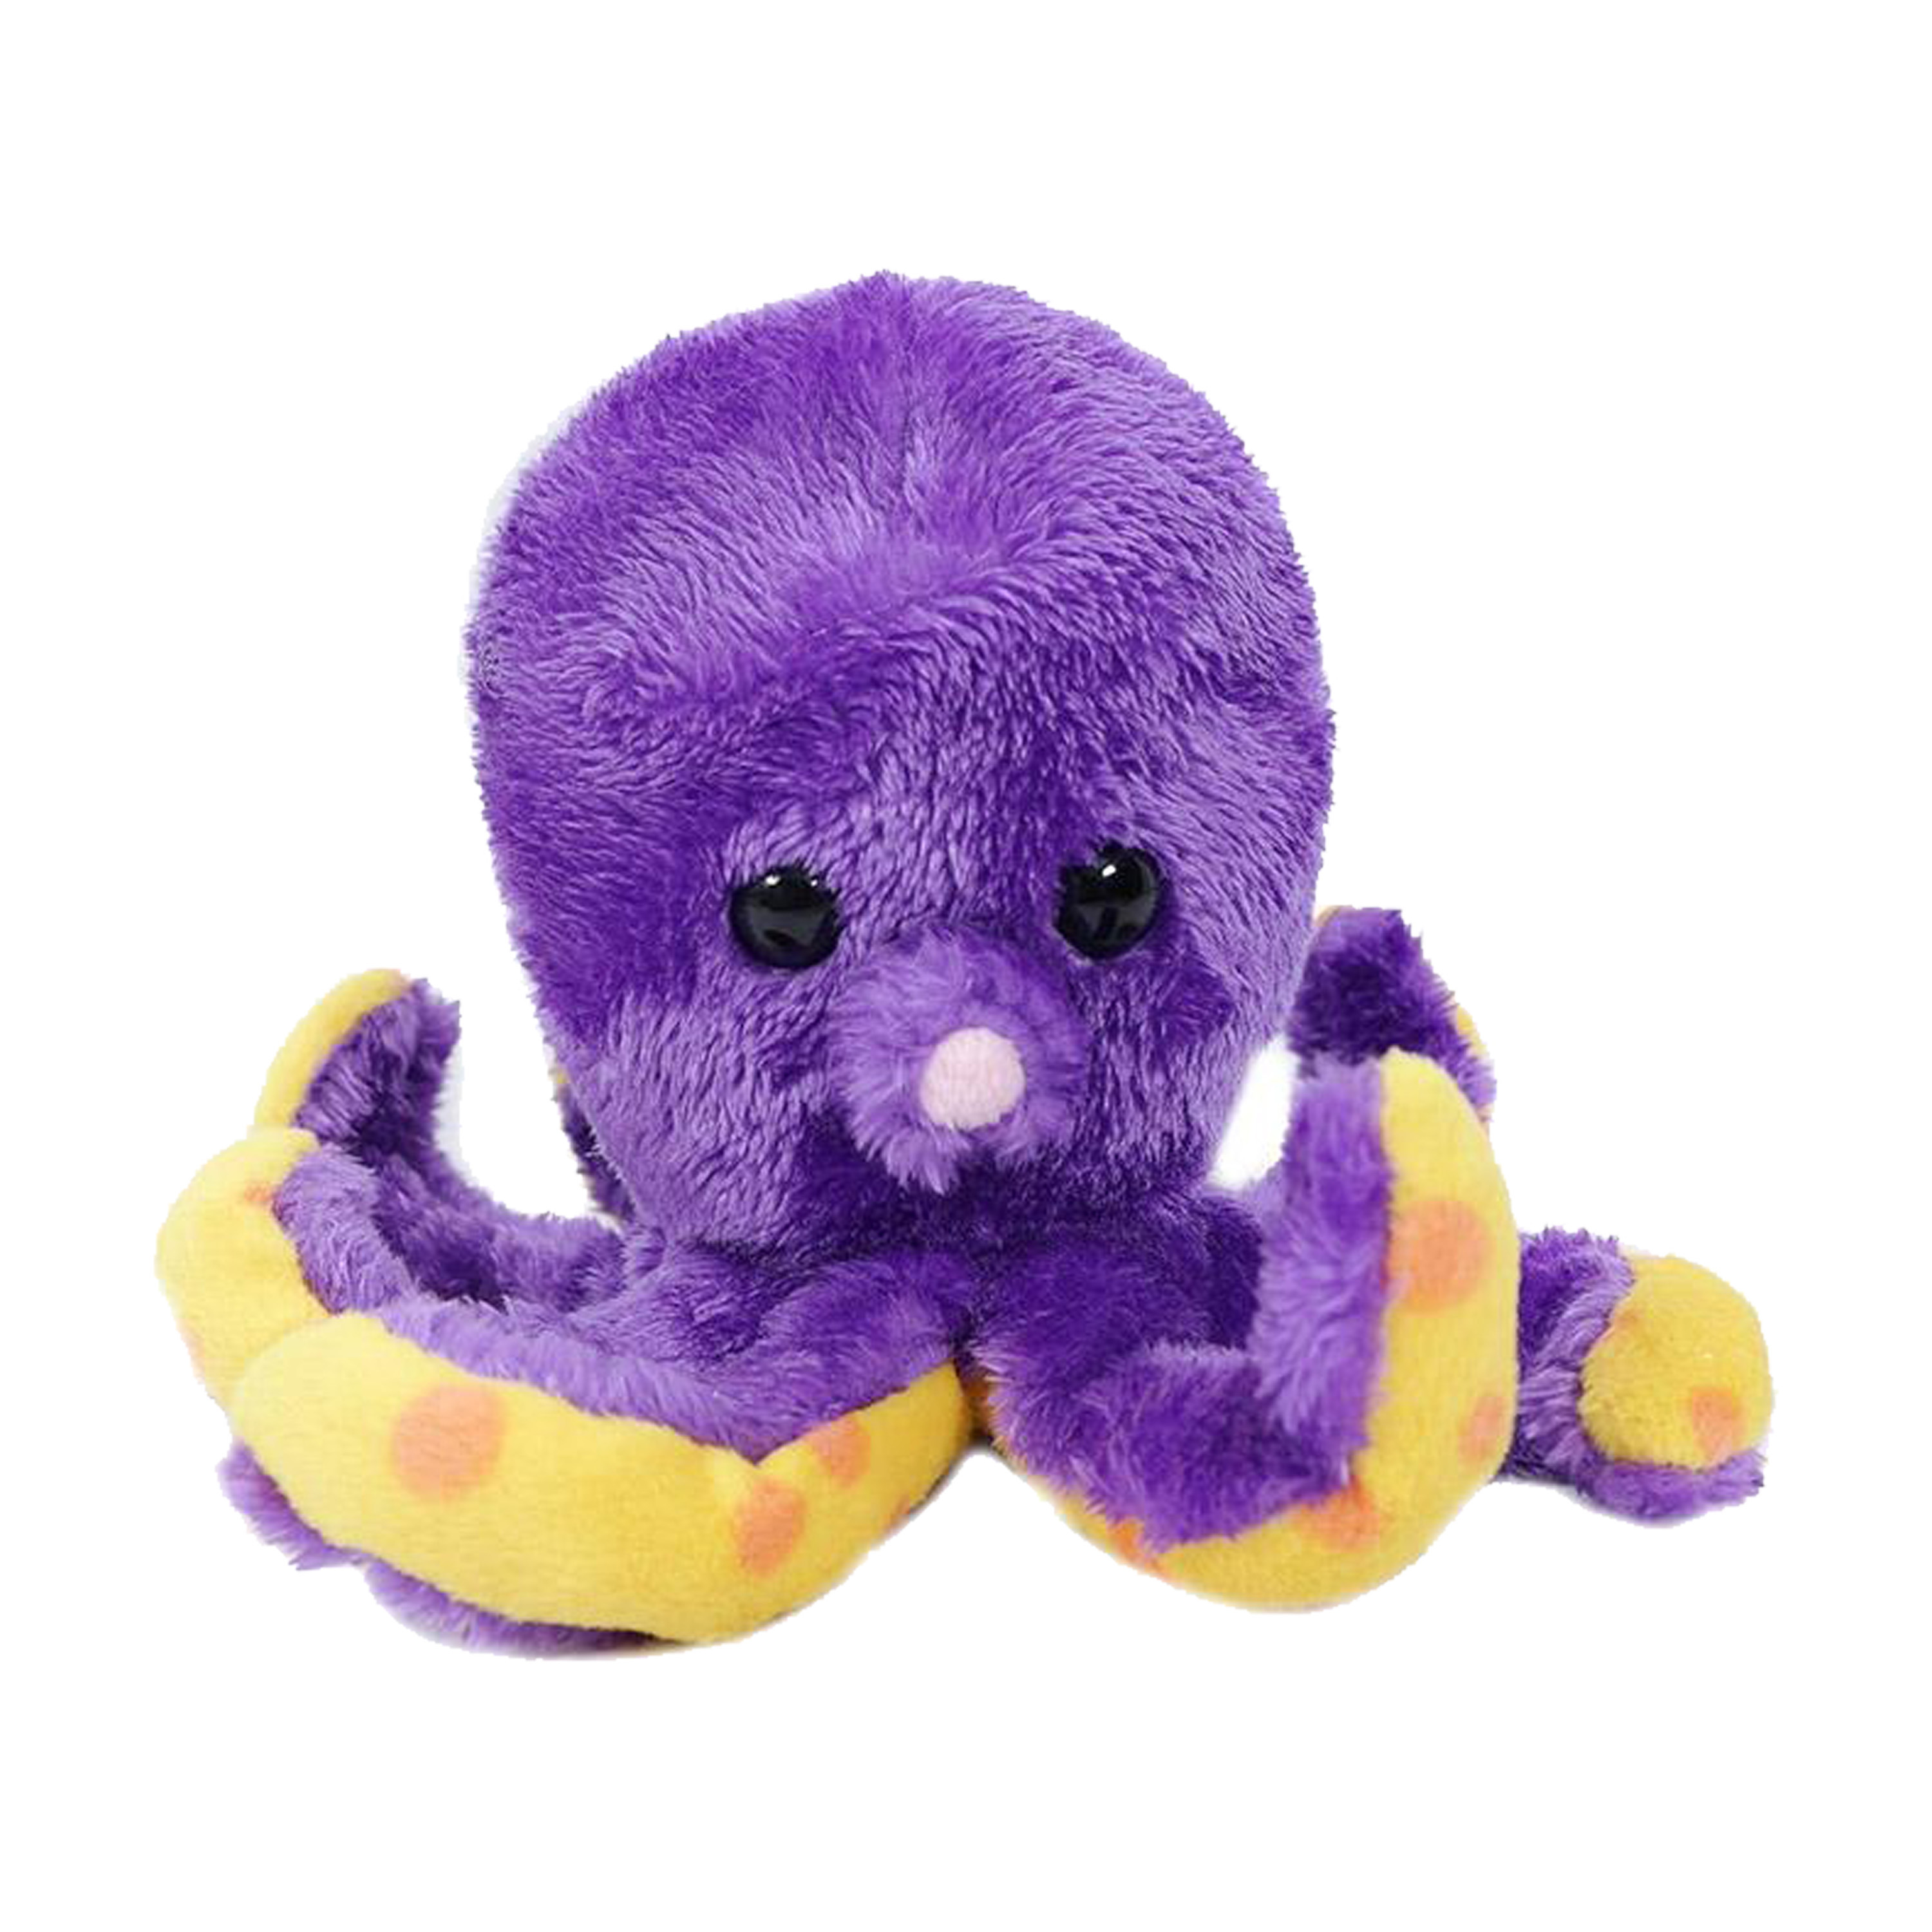 Knuffeldier Inktvis-octopus zachte pluche stof premium kwaliteit knuffels paars 12 cm